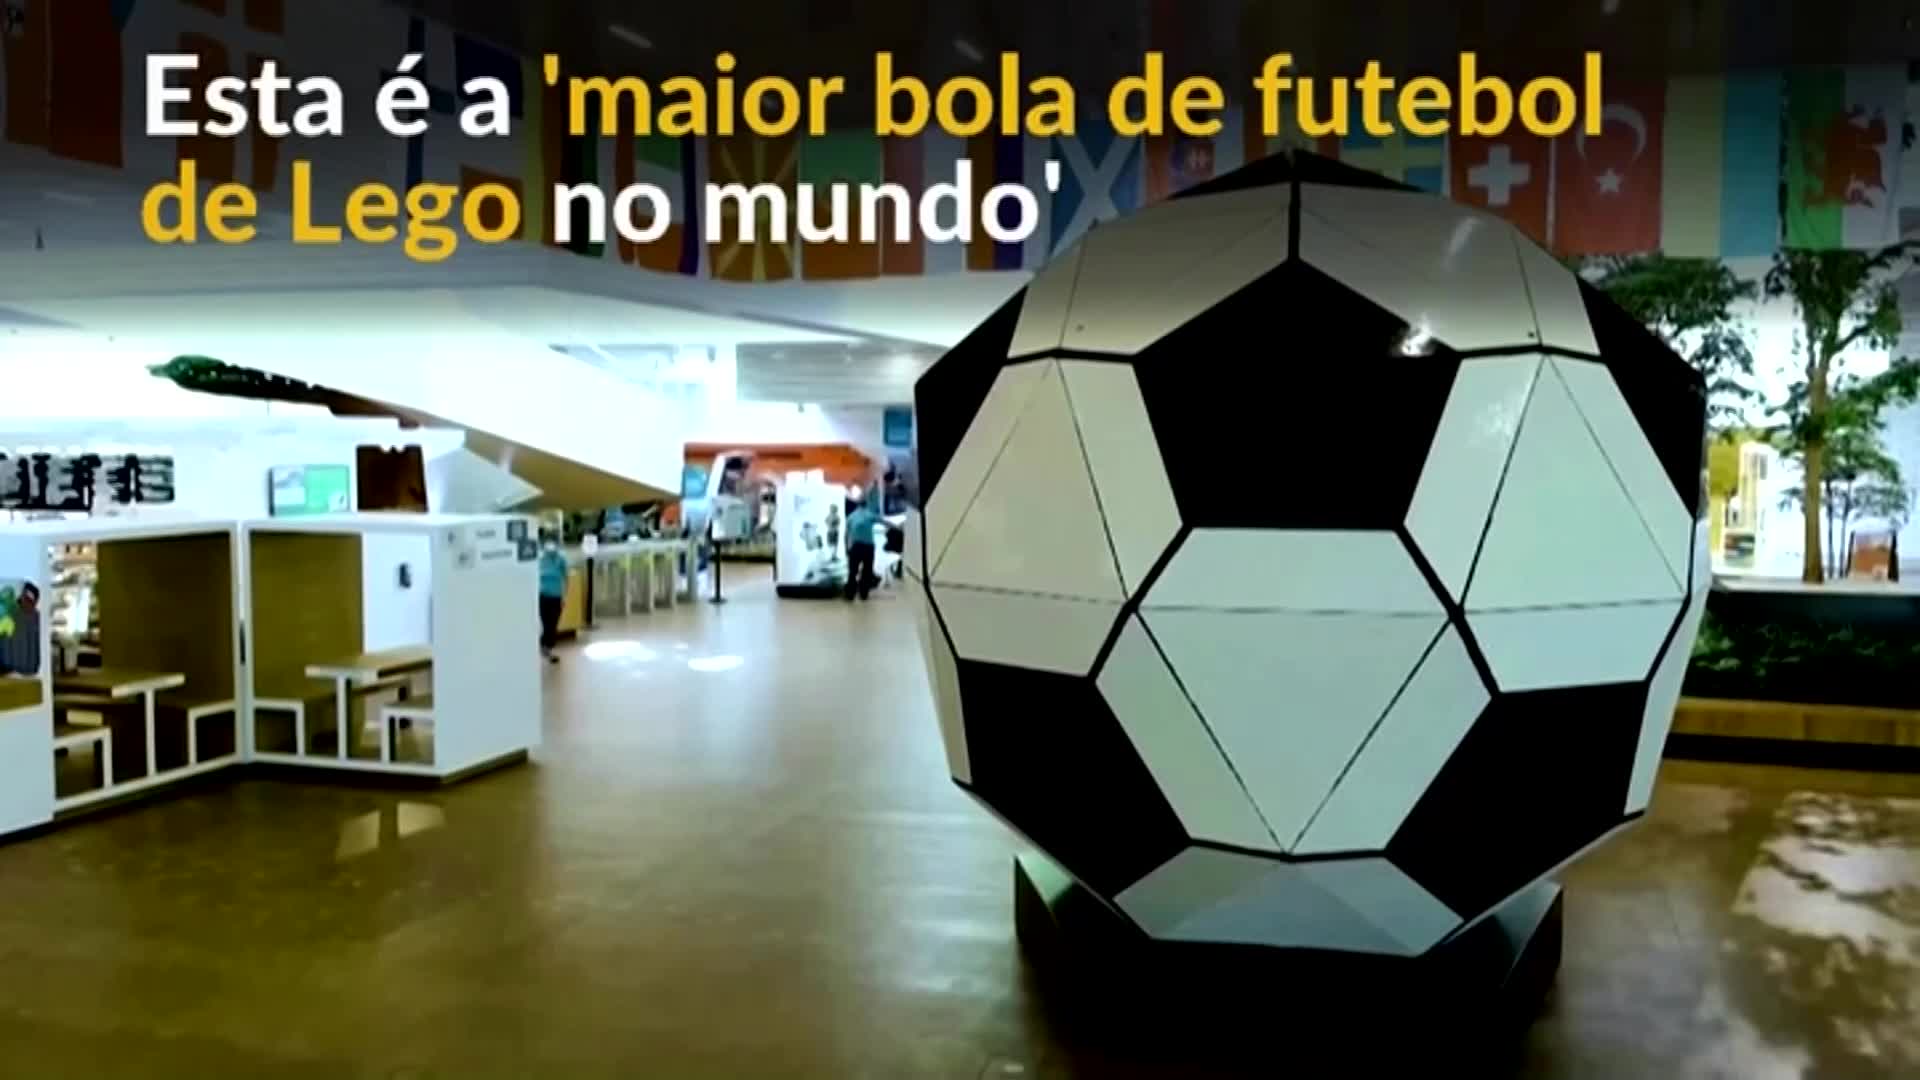 Vídeo: Funcionários constroem maior bola de futebol de Lego no mundo